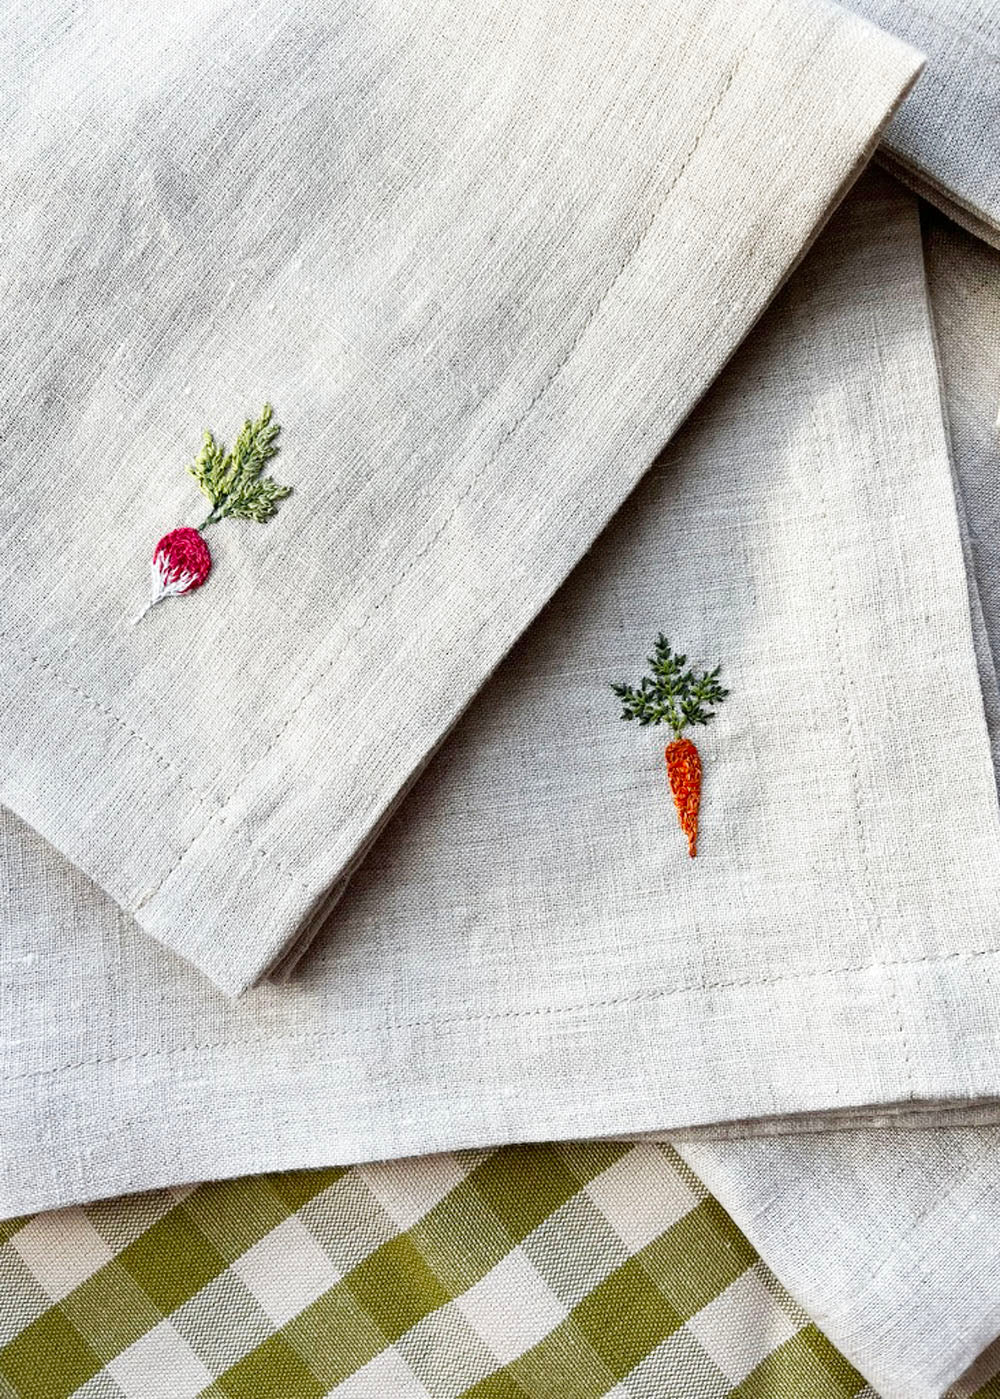 Vegetable garden linen napkin set of 2